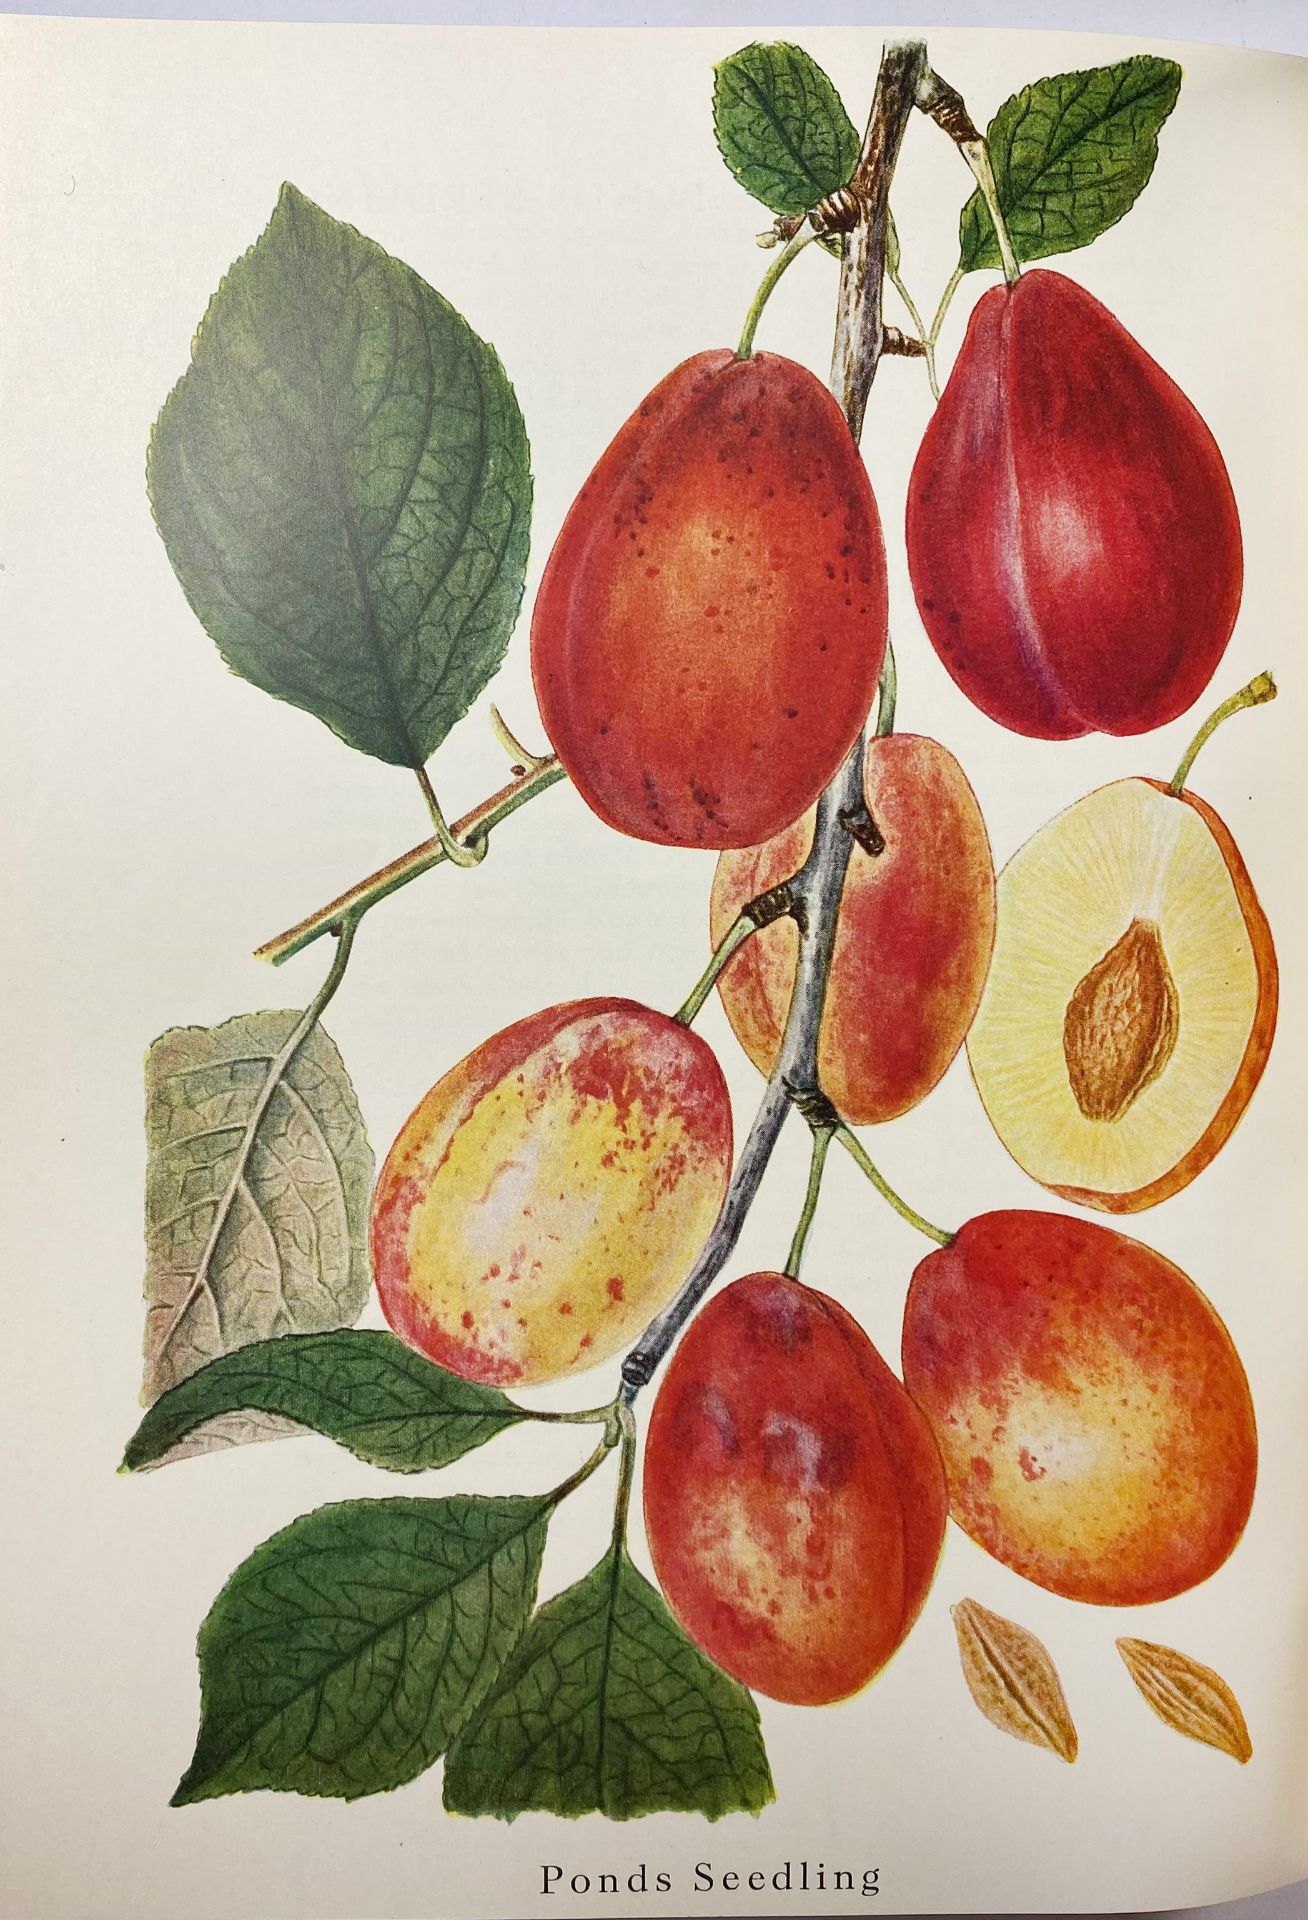 PEDERSEN, A. Danmarks frugtsorter. I: Æbler. II: Pærer, Blommer, Kirsebær. (1950-)55 - Image 2 of 3